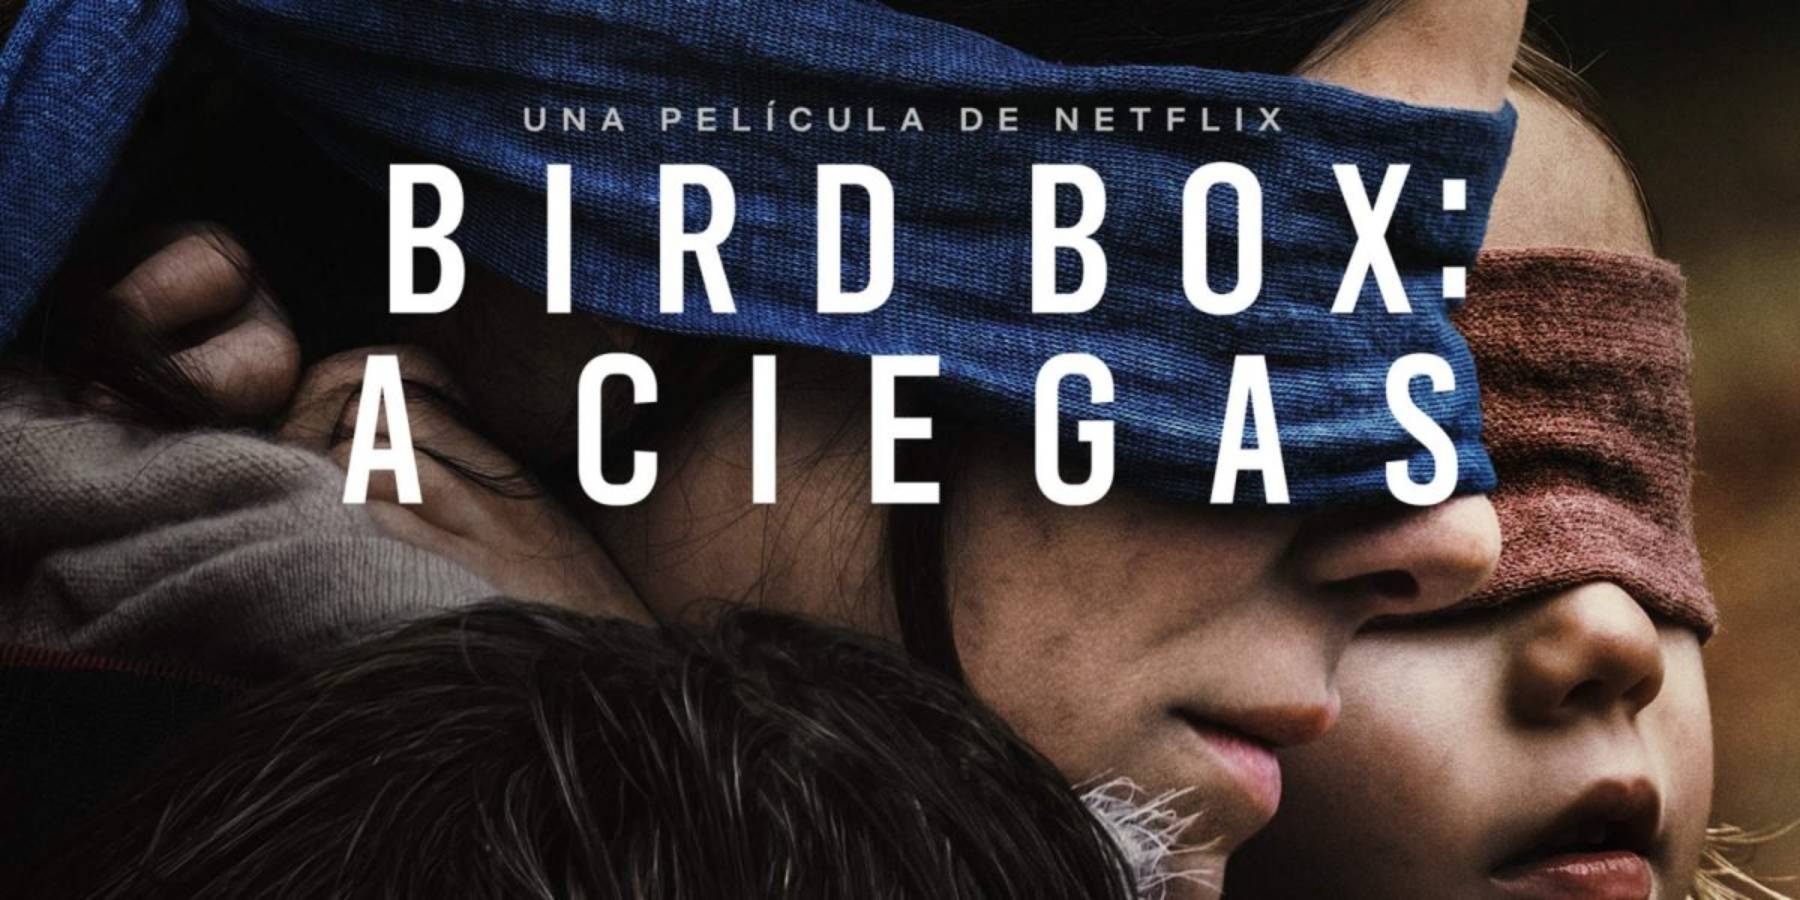 NETFLIX Bird Box A ciegas estrena nuevo trailer